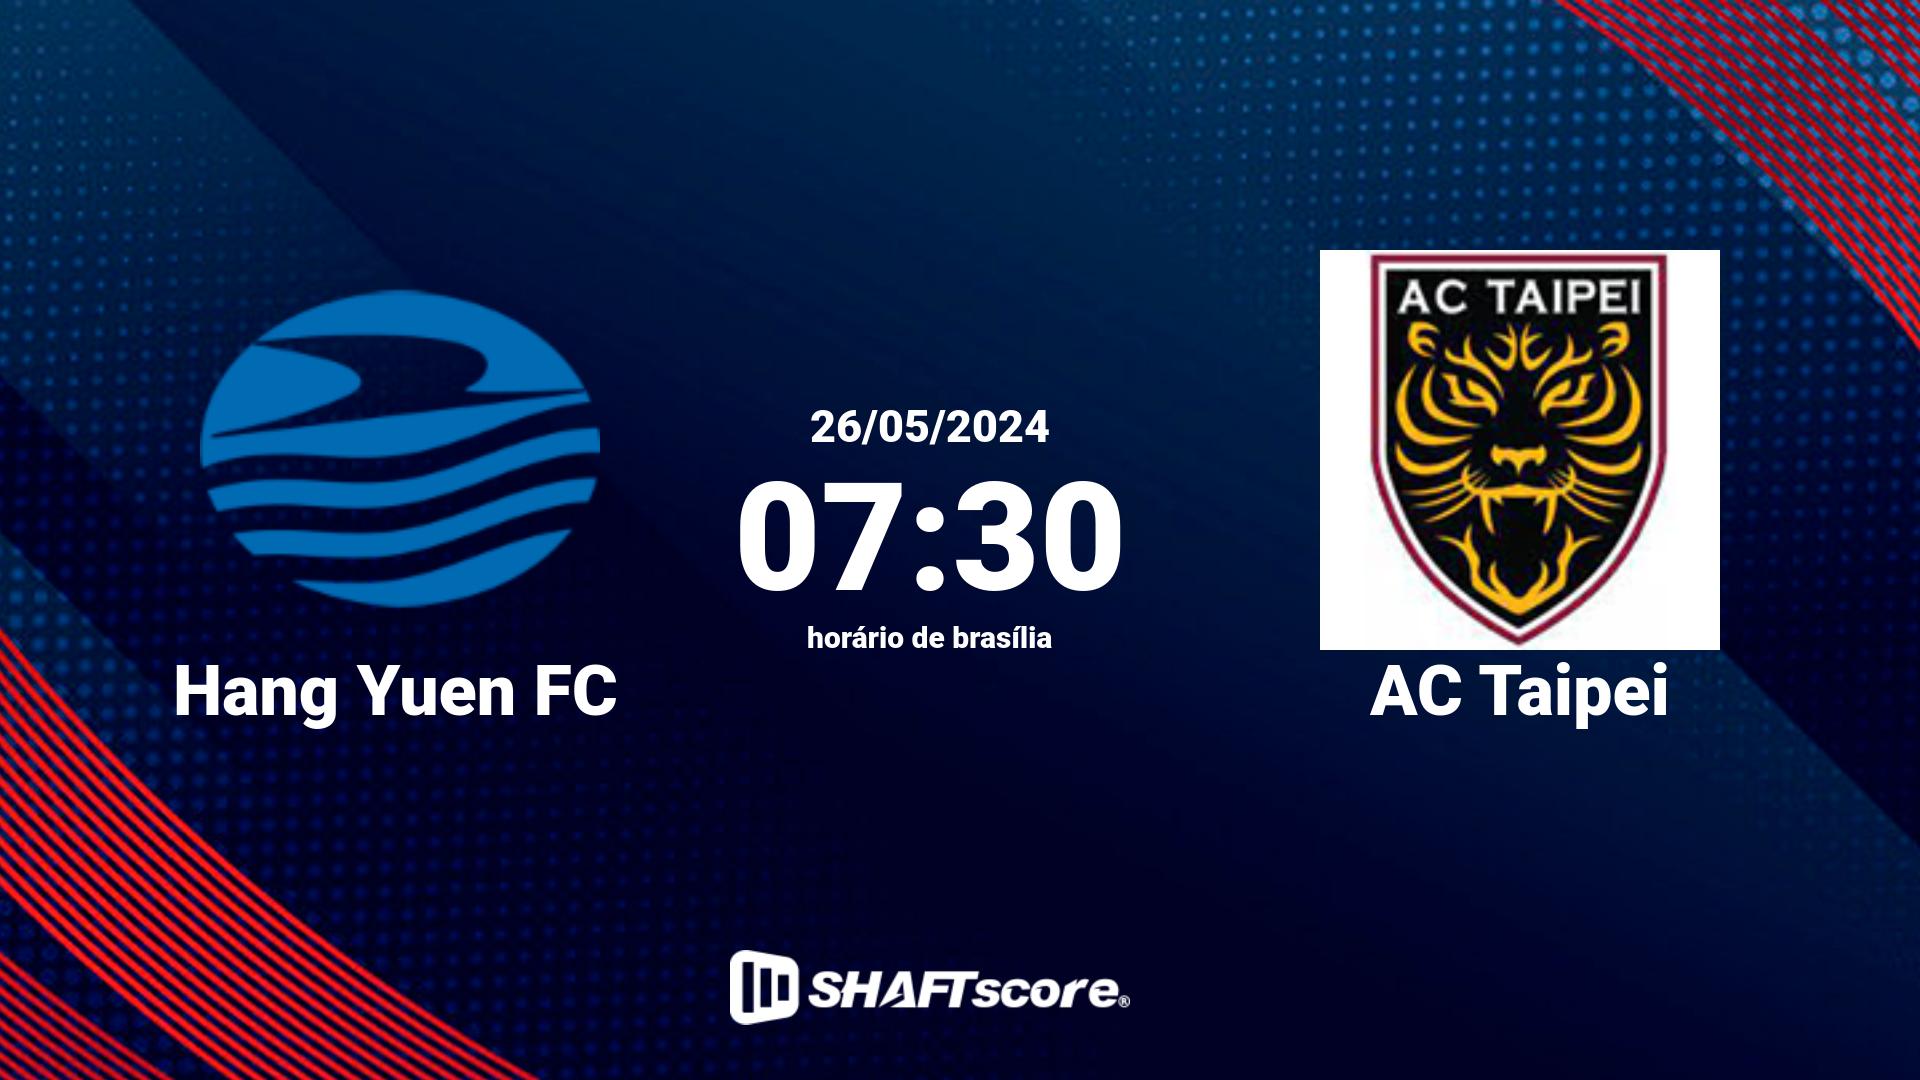 Estatísticas do jogo Hang Yuen FC vs AC Taipei 26.05 07:30